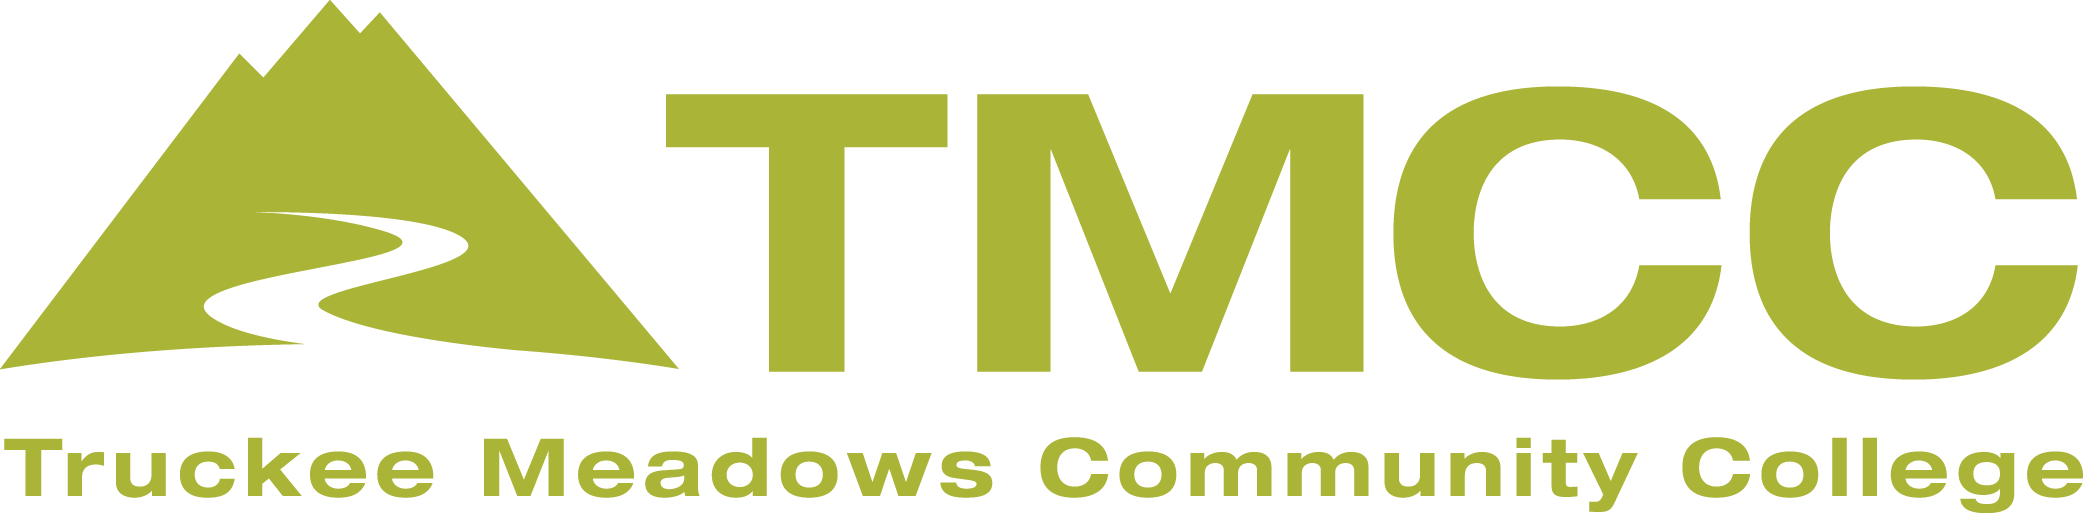 tmcc logo